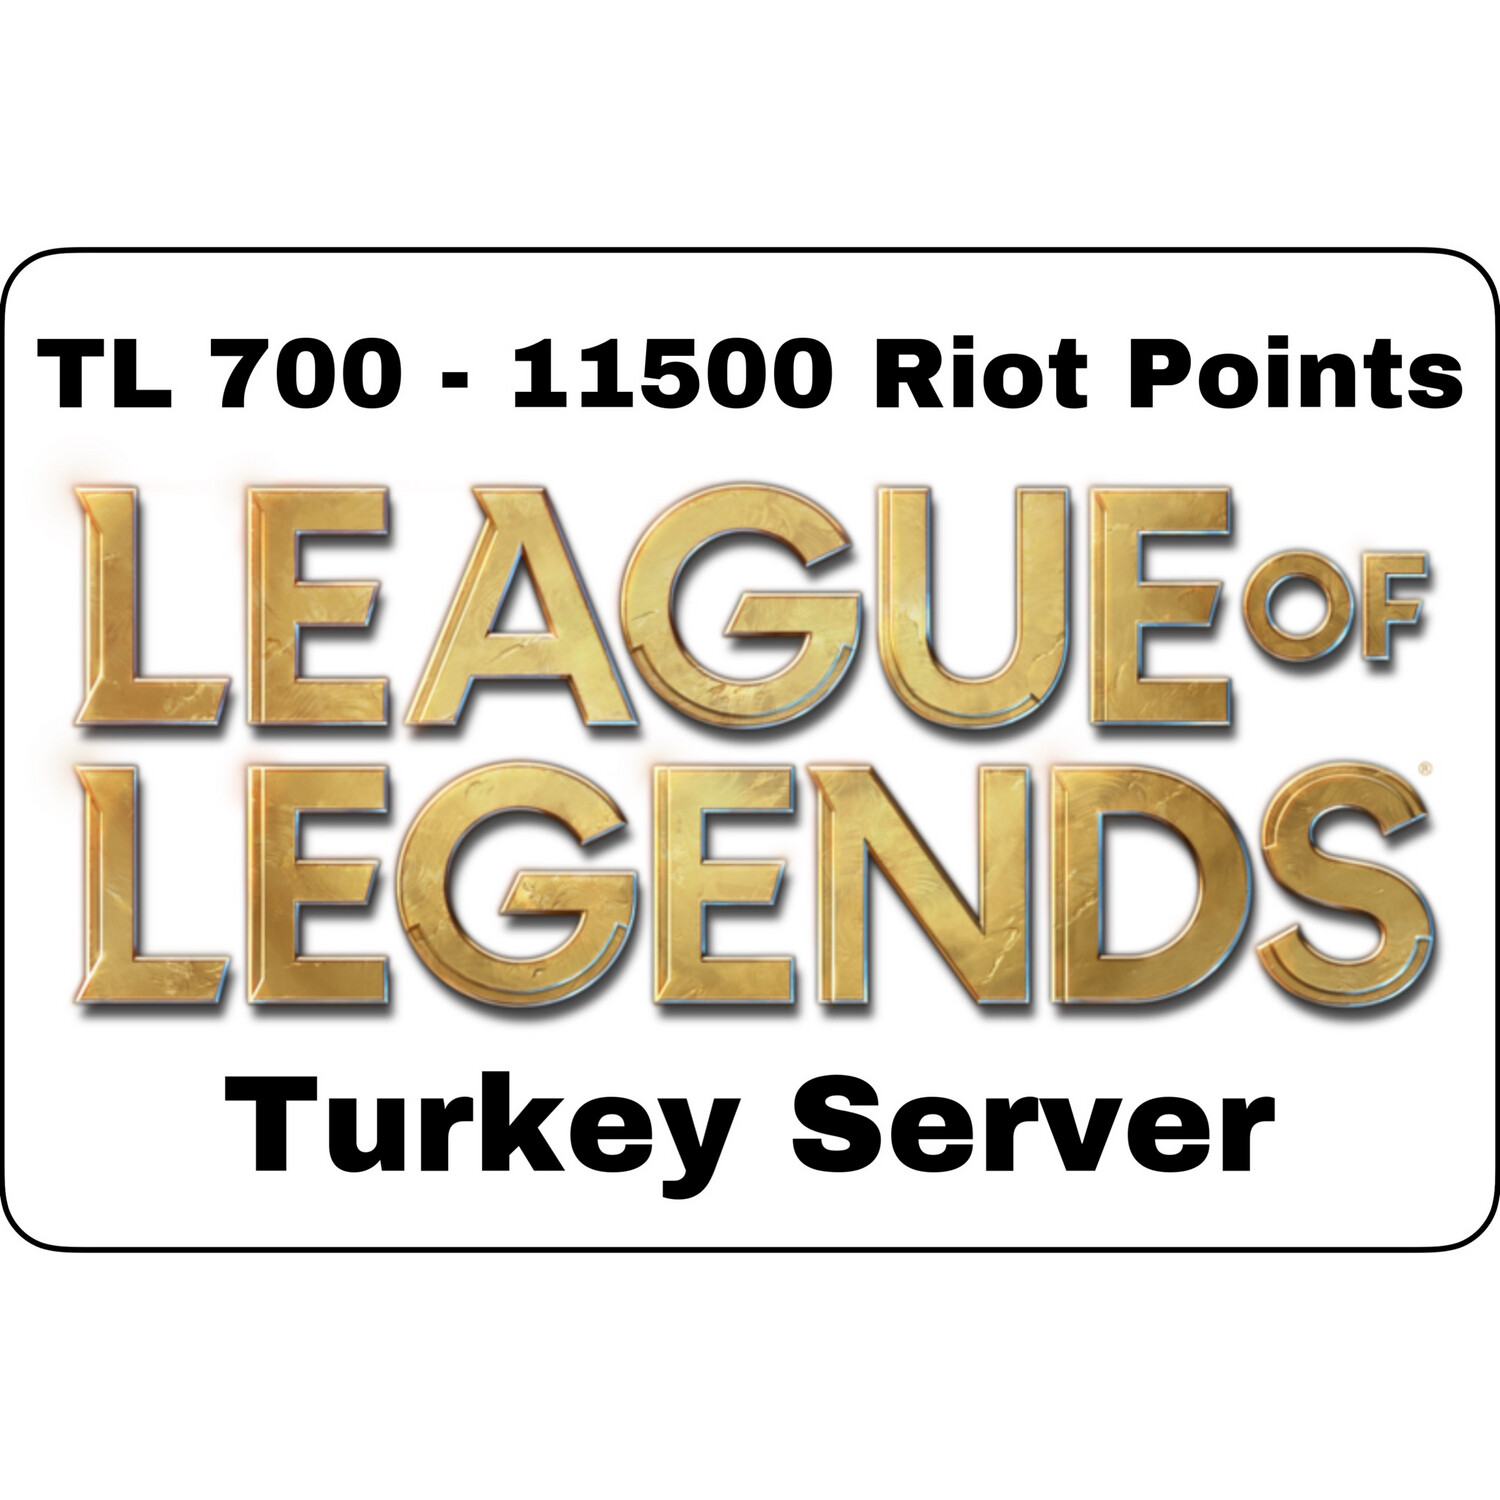 League of Legends TL 700 Turkey Server 11500 Riot Points